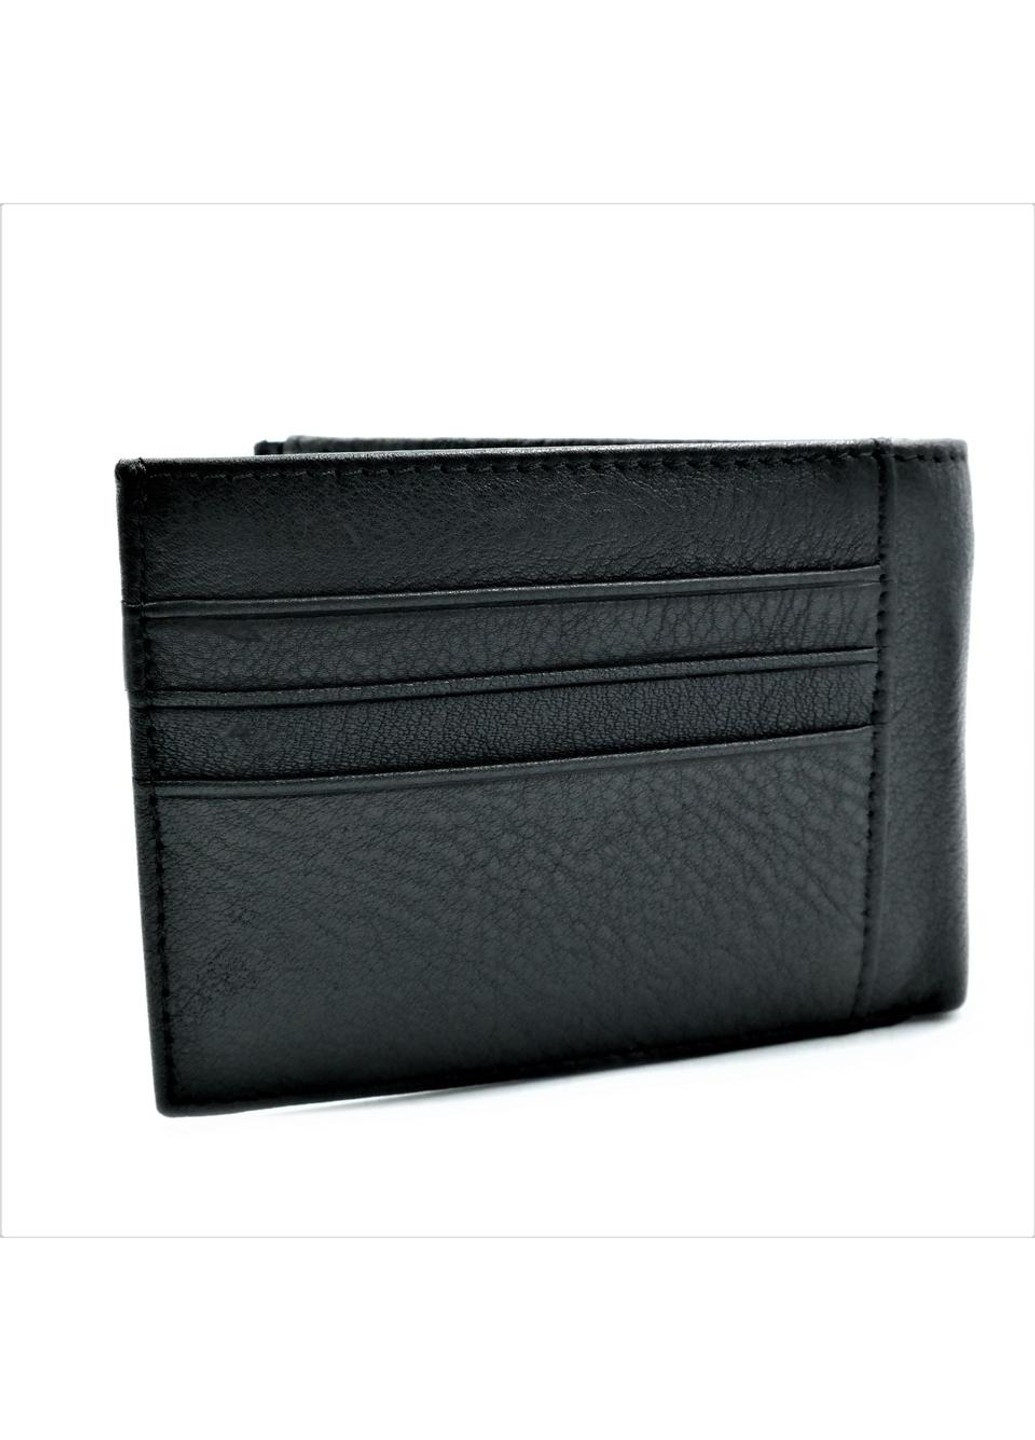 Мужской кожаный кошелек-зажим 11 х 8 х 2 см Черный wtro-168-24C Weatro (272596151)